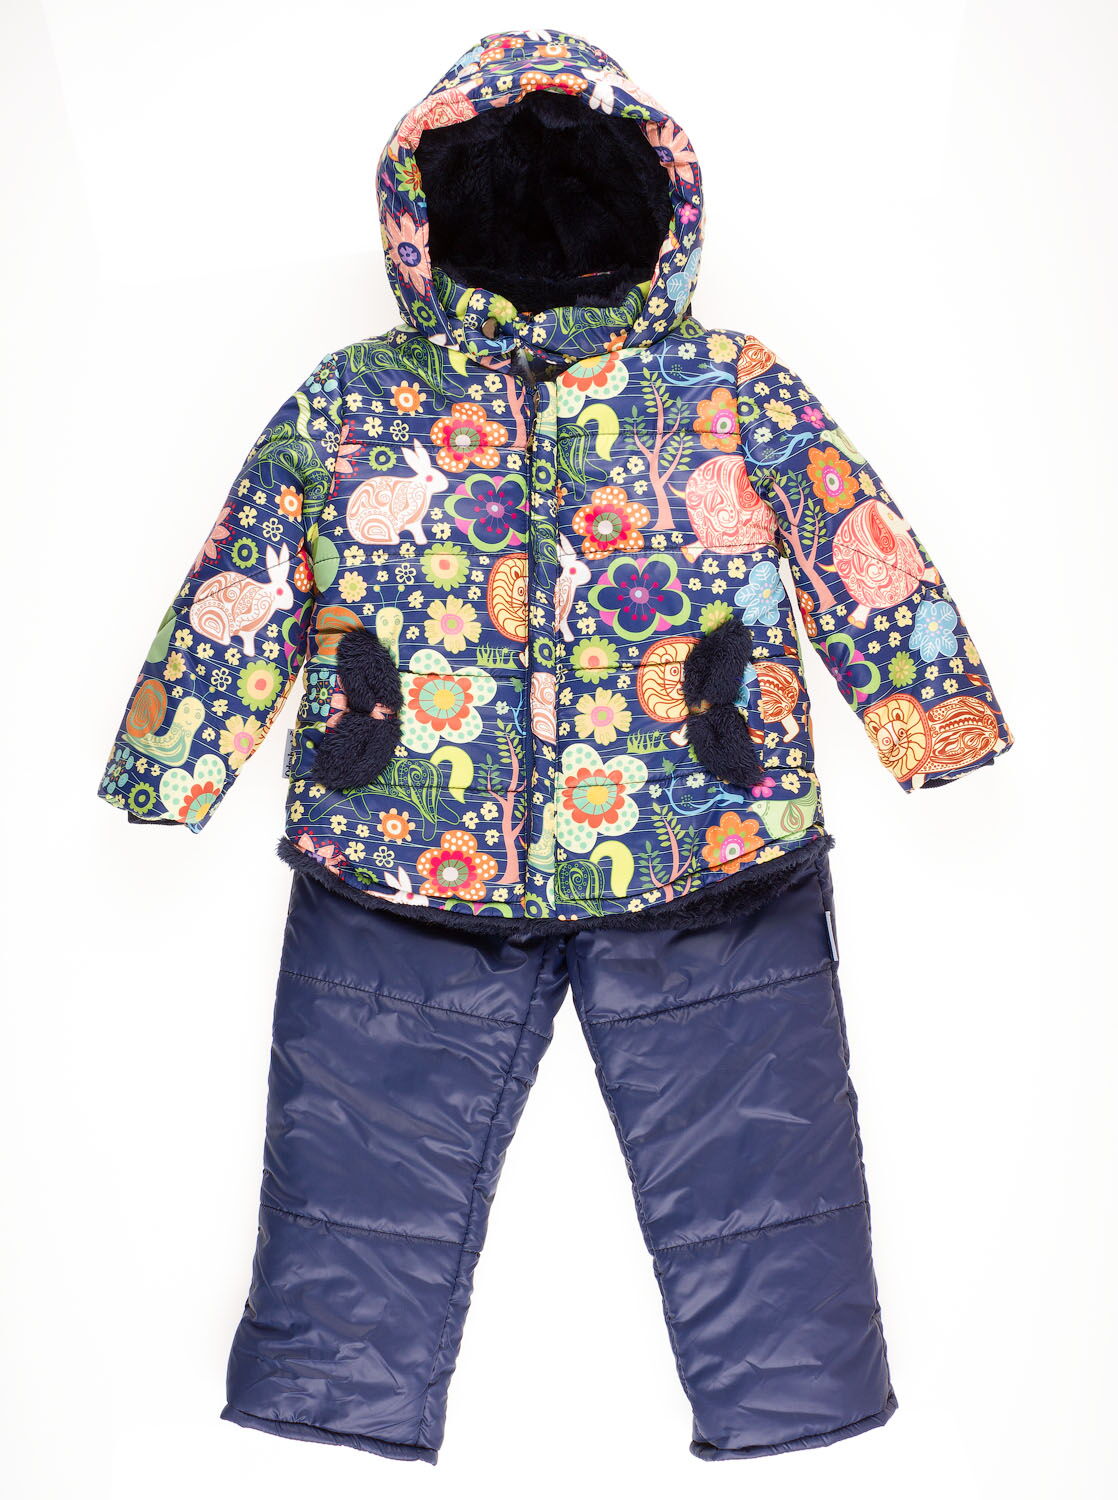 Комбинезон раздельный для девочки (куртка+штаны) ОДЯГАЙКО Цветы темно-синий 22110/01230 - цена